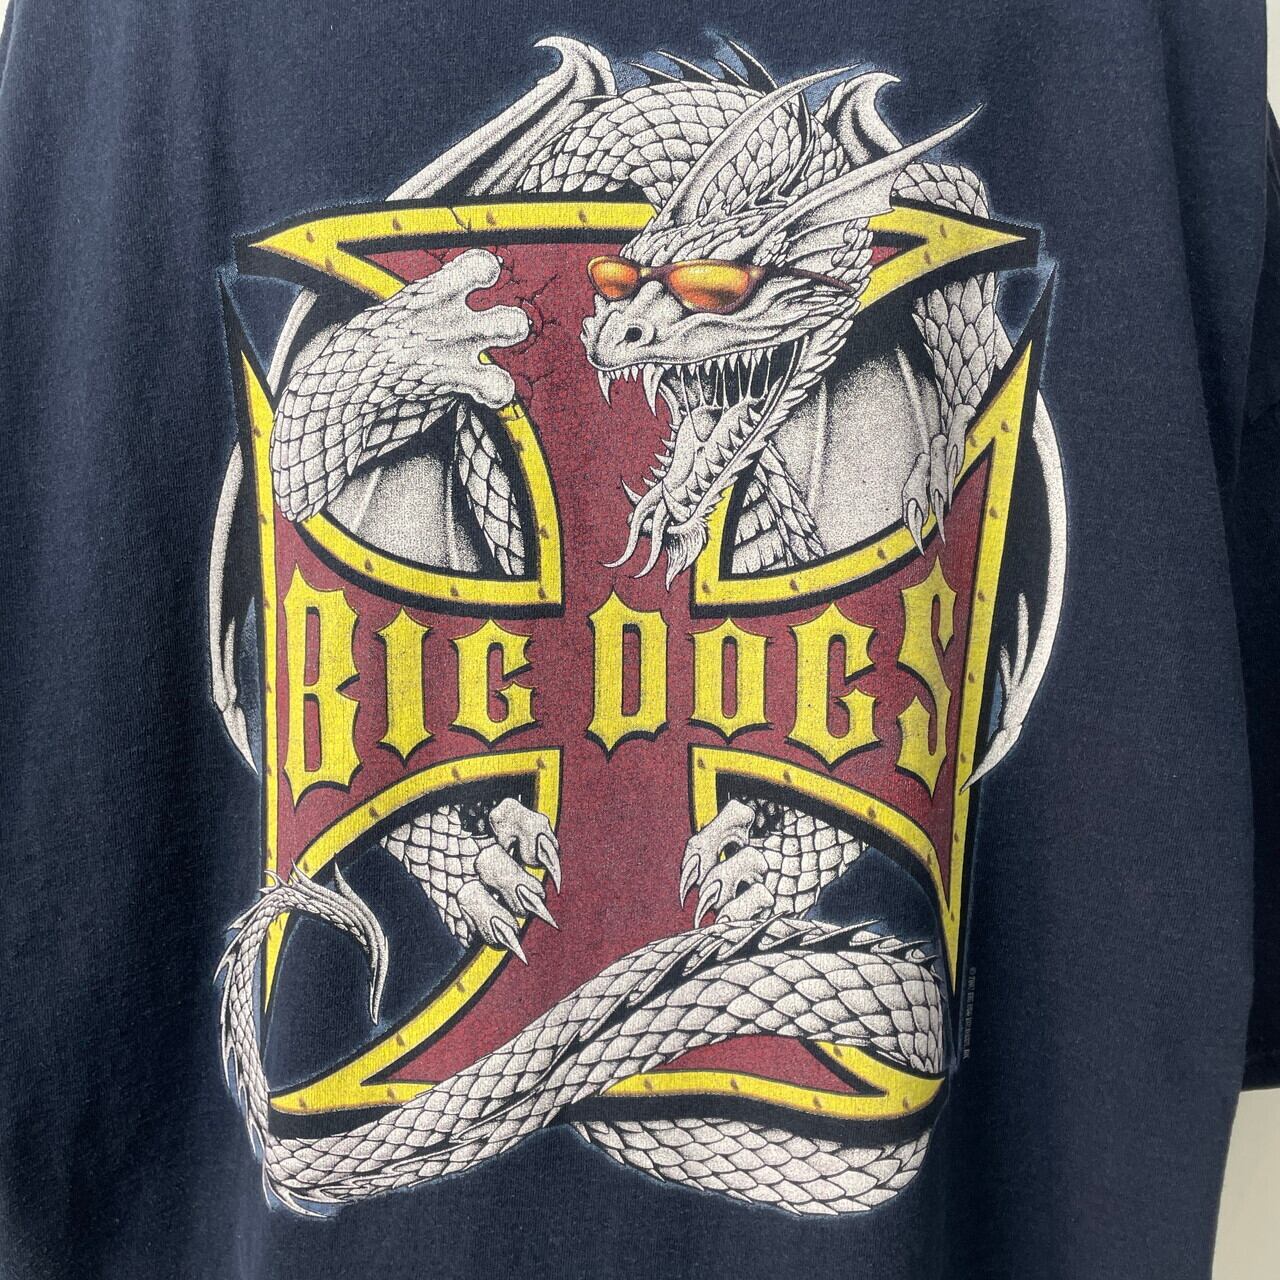 BIG DOGS ロゴ刺繍スウェット ネイビー 長袖 ビッグサイズ